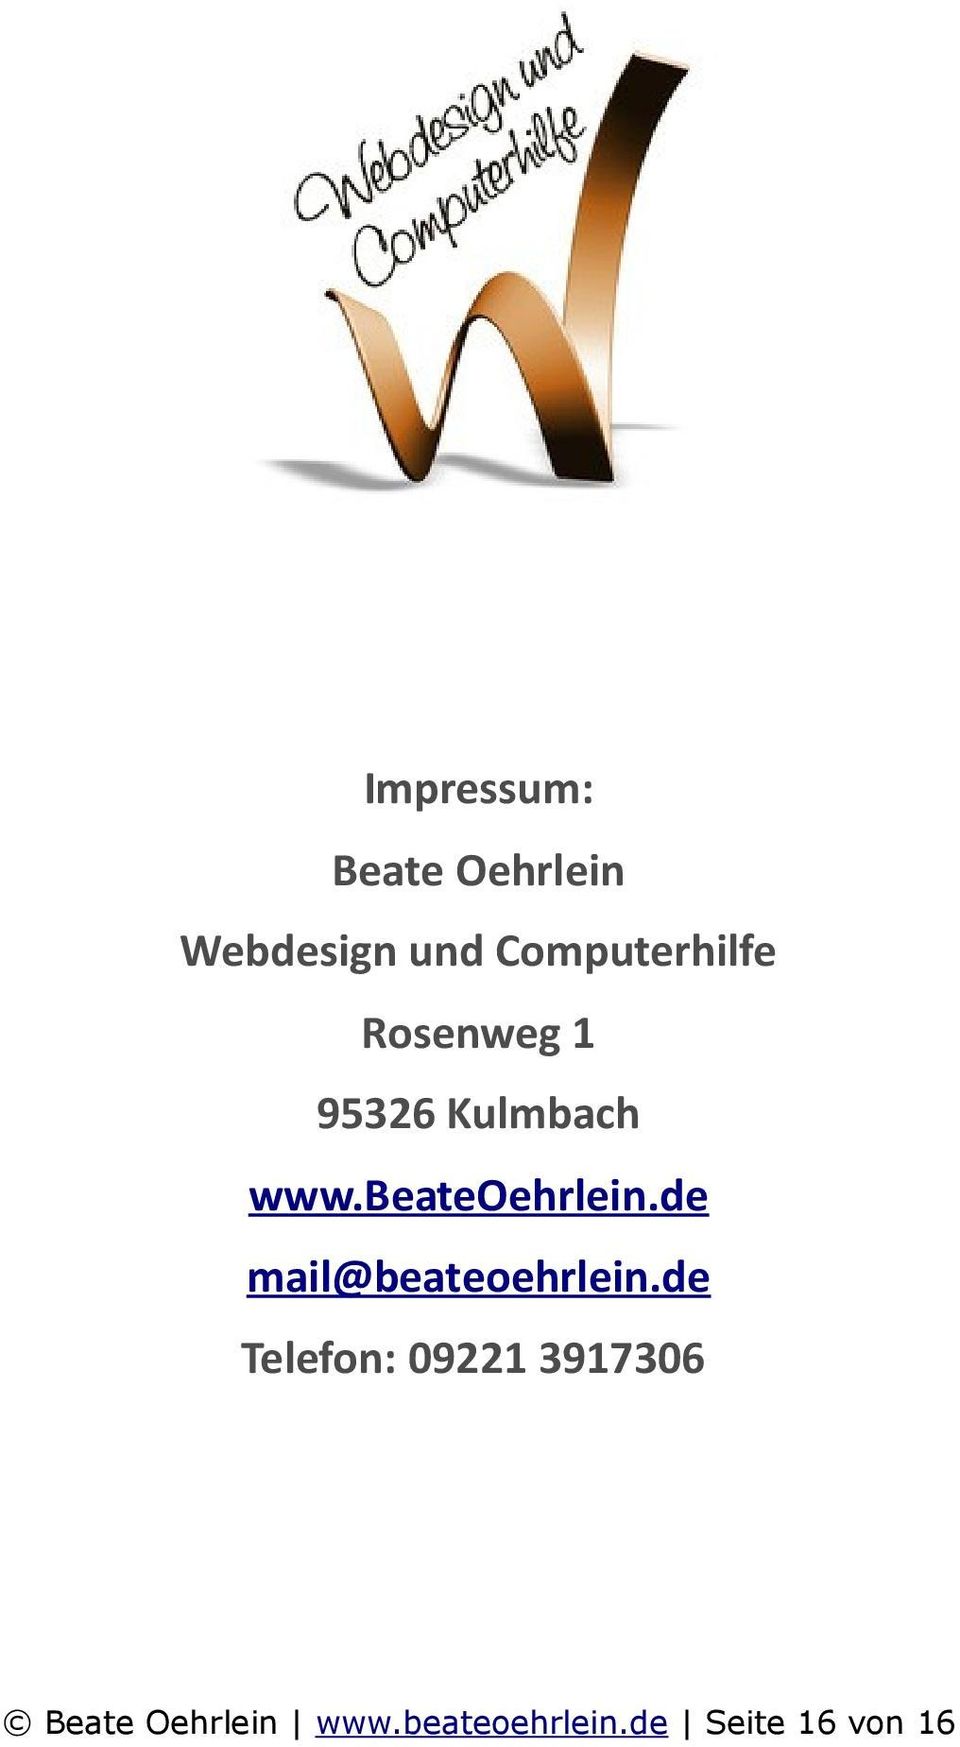 beateoehrlein.de mail@beateoehrlein.